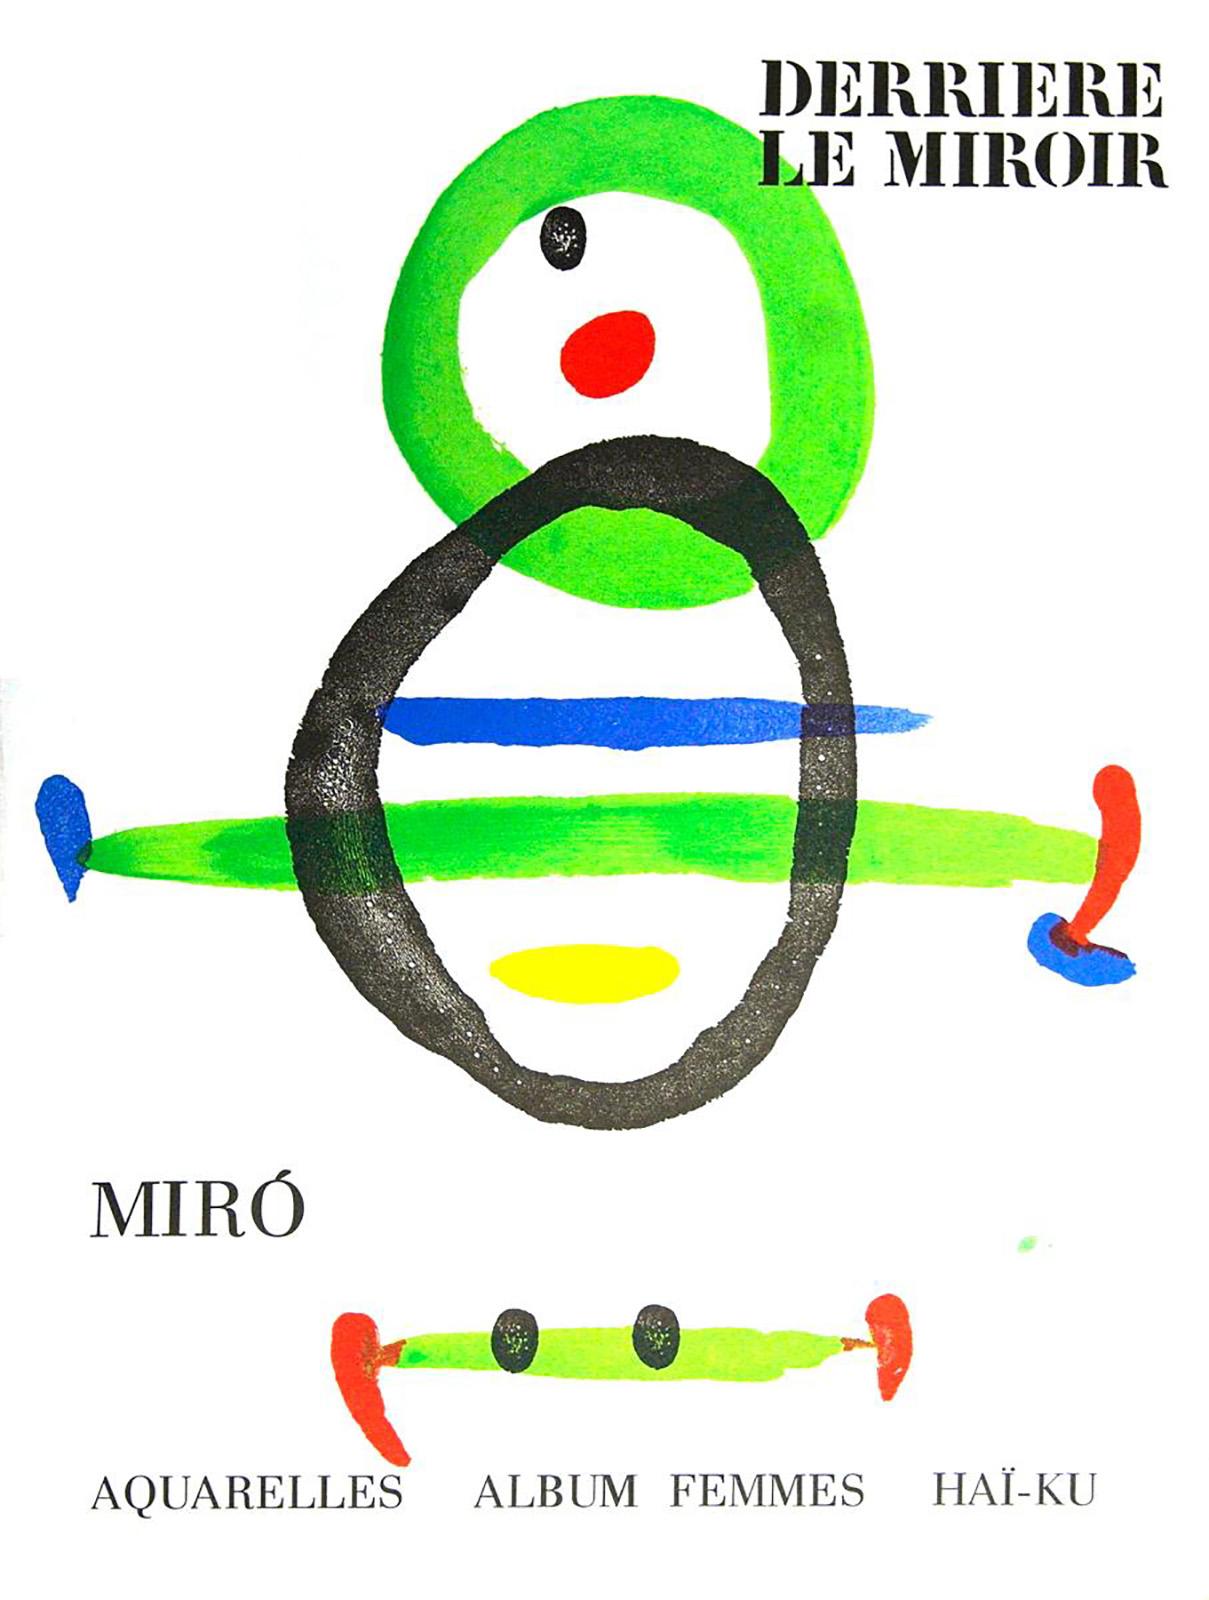 Joan Mirós lithografischer Einband: Derrière le miroir:

Lithografischer Einband; 15 x 11 Zoll.
Insgesamt sehr guter Vintage-Zustand.
Unsigniert aus einer Auflage von unbekannt.
Mappe: Derrière le miroir, ca. 1968.
Sieht in Passepartout und gerahmt